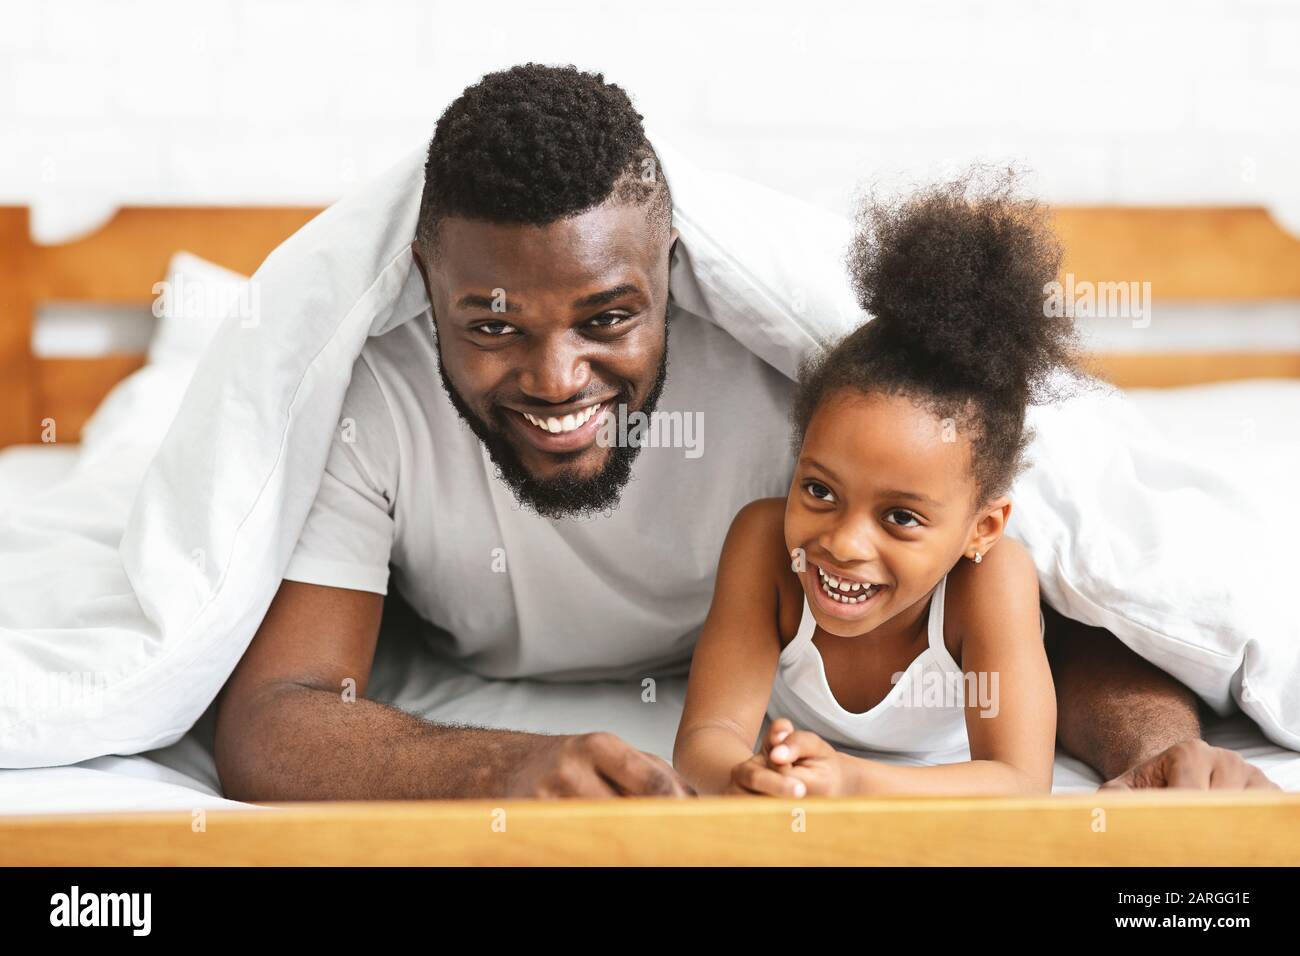 Lächelnder schwarzer Familienvater und Tochter unter Decke legen Stockfoto